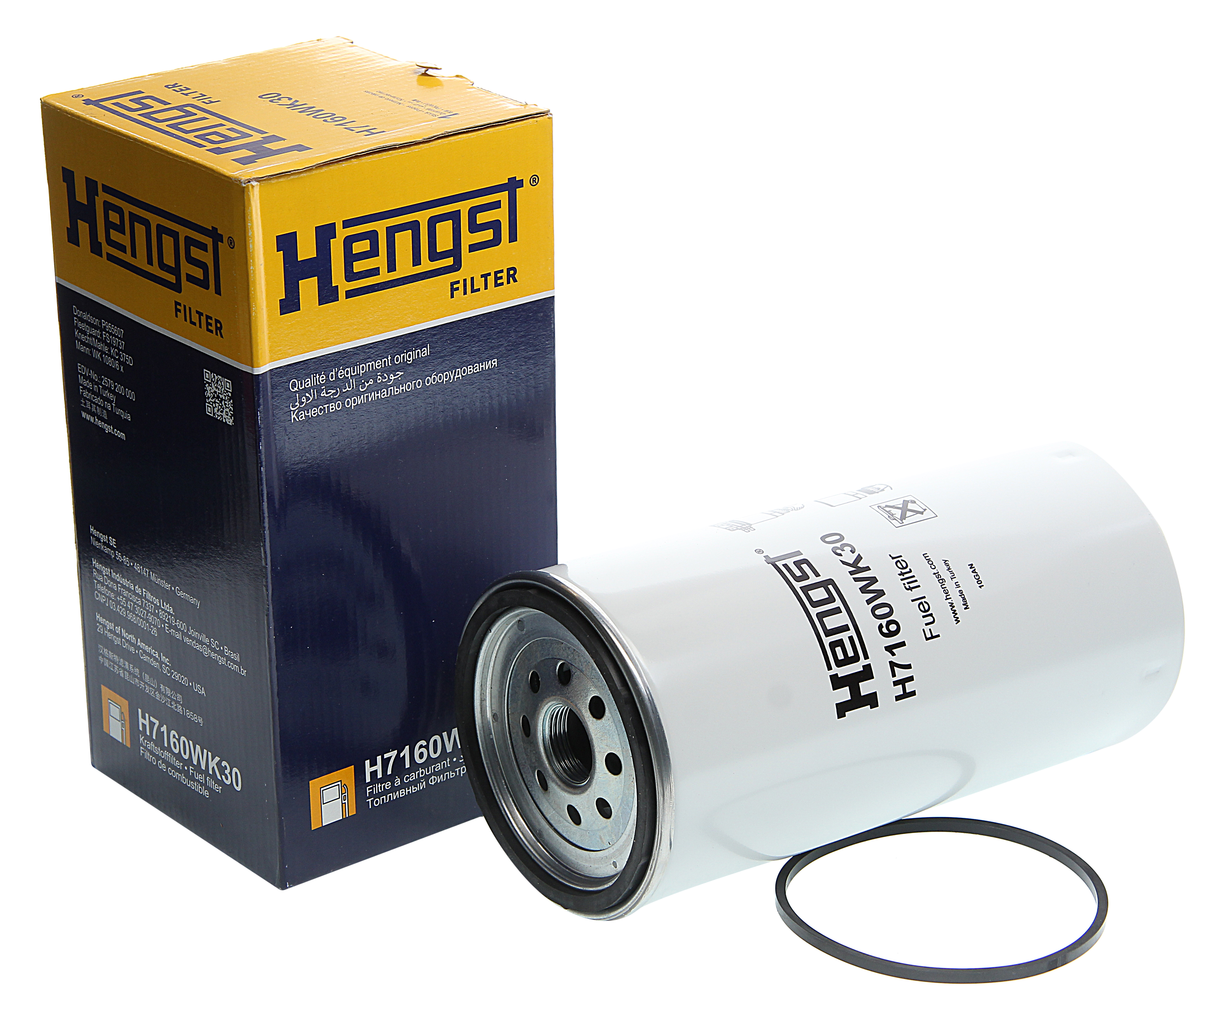 Фильтр топливный IVECO P,G,R,T series сепаратор под колбу, H7160WK30, HENGST